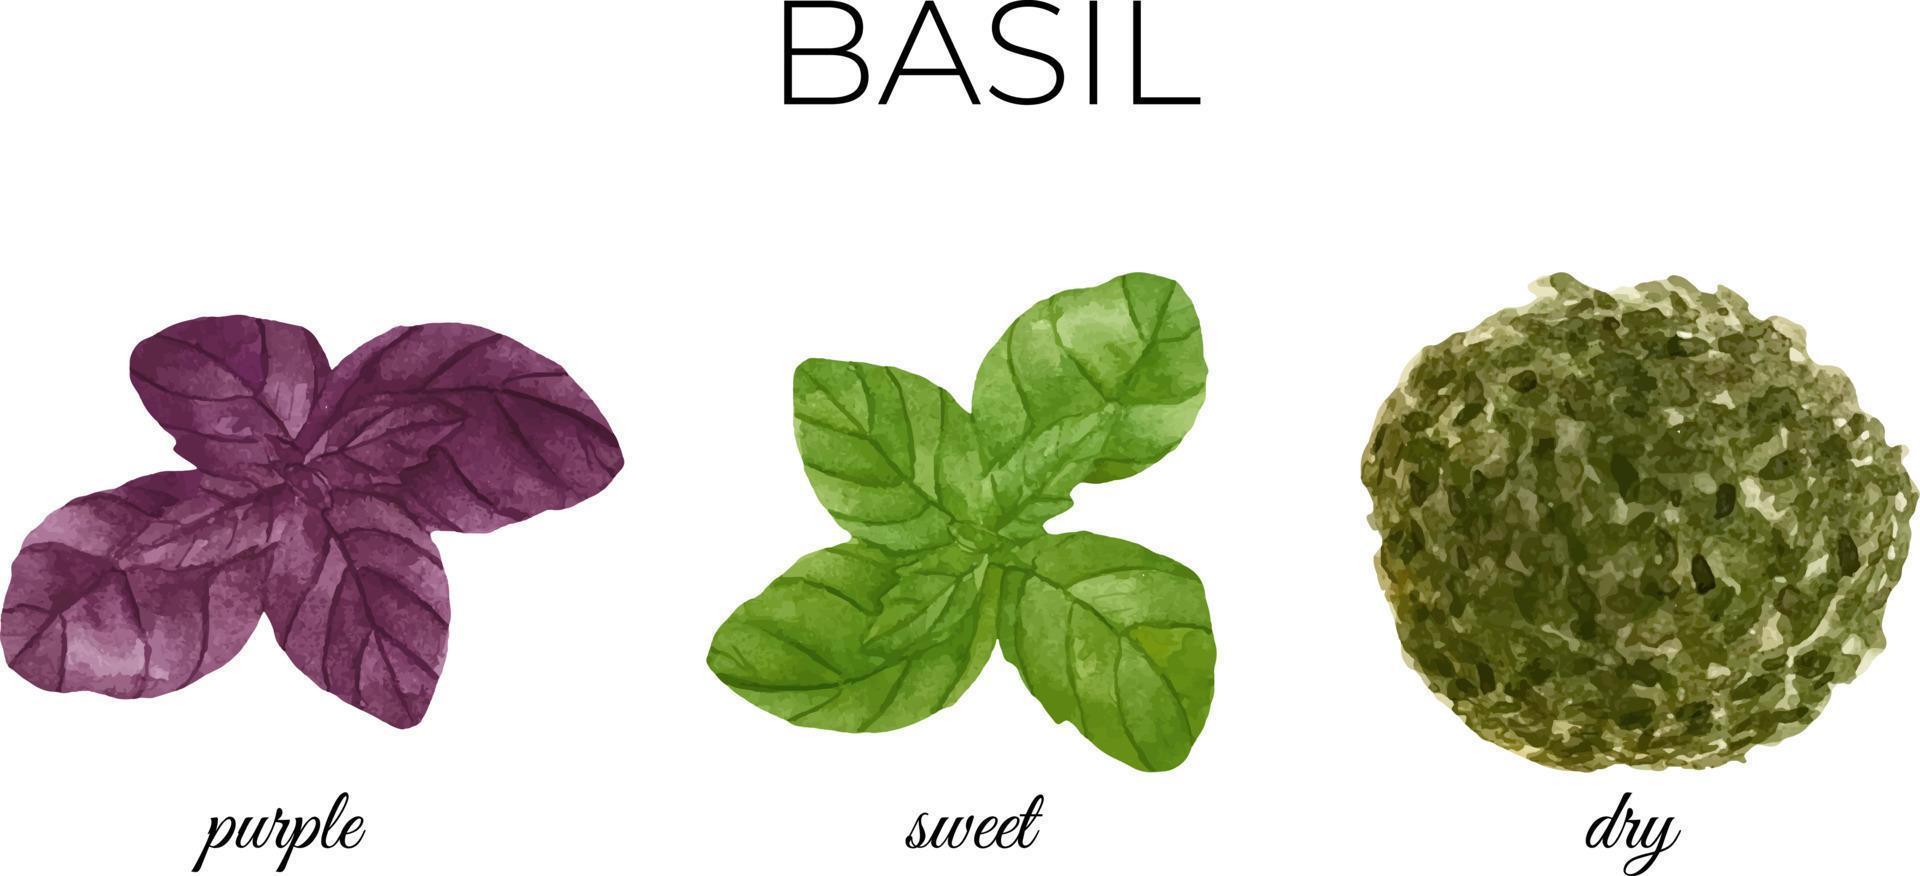 acquerello fresco verde e viola basilico le foglie. asciutto basilico. cucina spezie e erbe aromatiche impostare. vettore